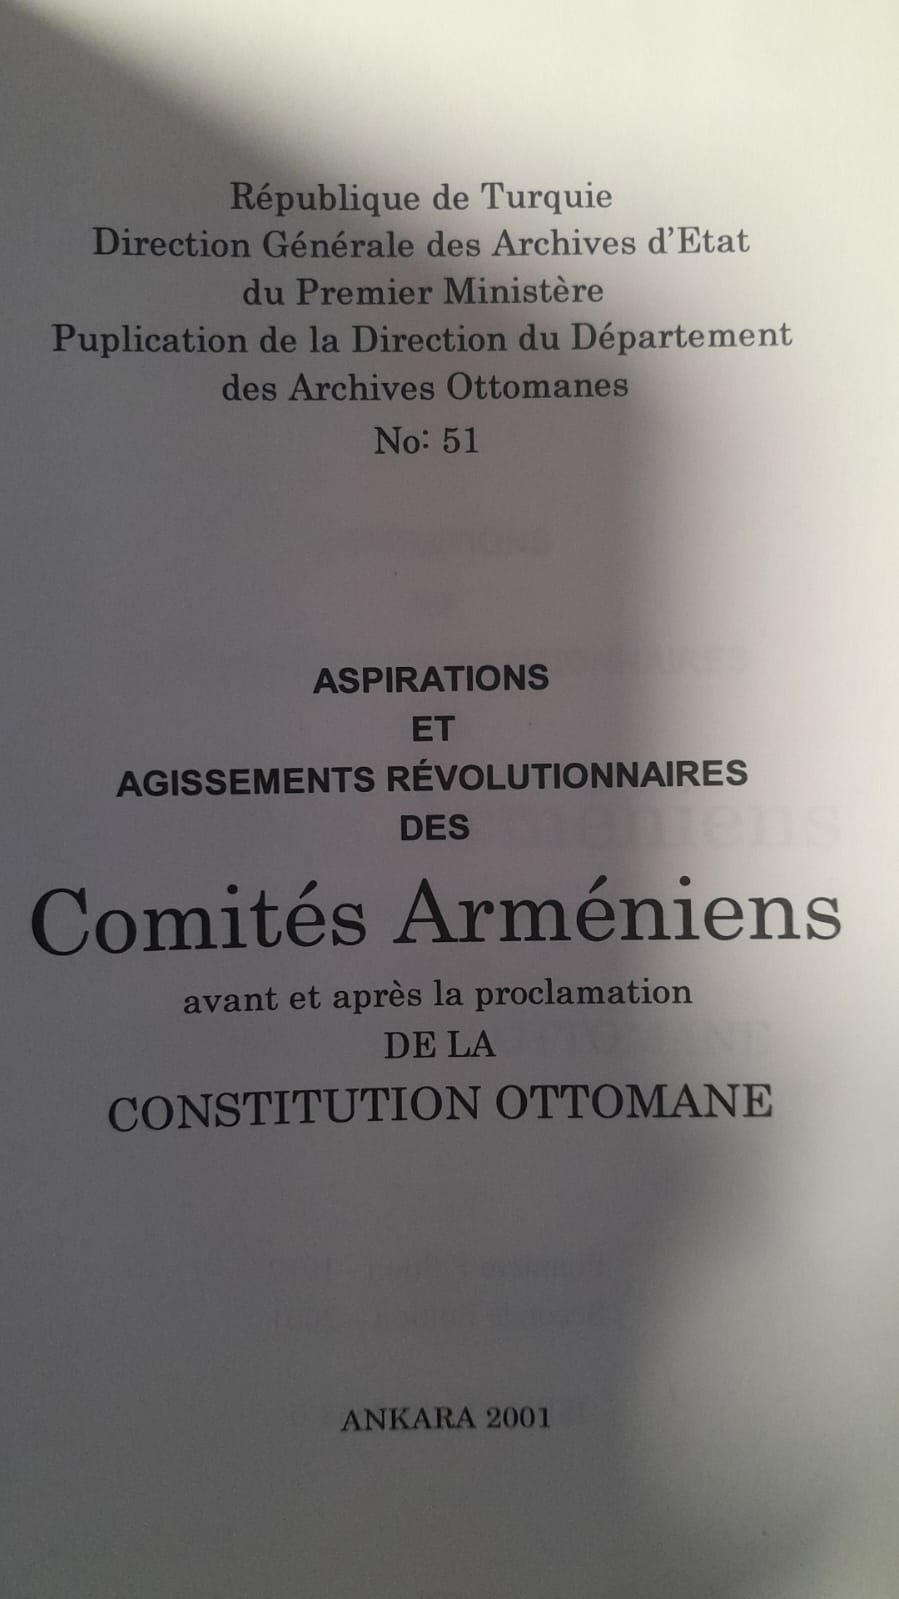 Aspirations Et Agissements Revolutionnaires Des Comites Armeniens Avant et apres la proclamation De La Consitutiın Ottomane - Osmanlı Anayasası'nın ilanından önce ve sonra Ermeni Komitelerinin Devrimci Özlemleri ve Eylemleri